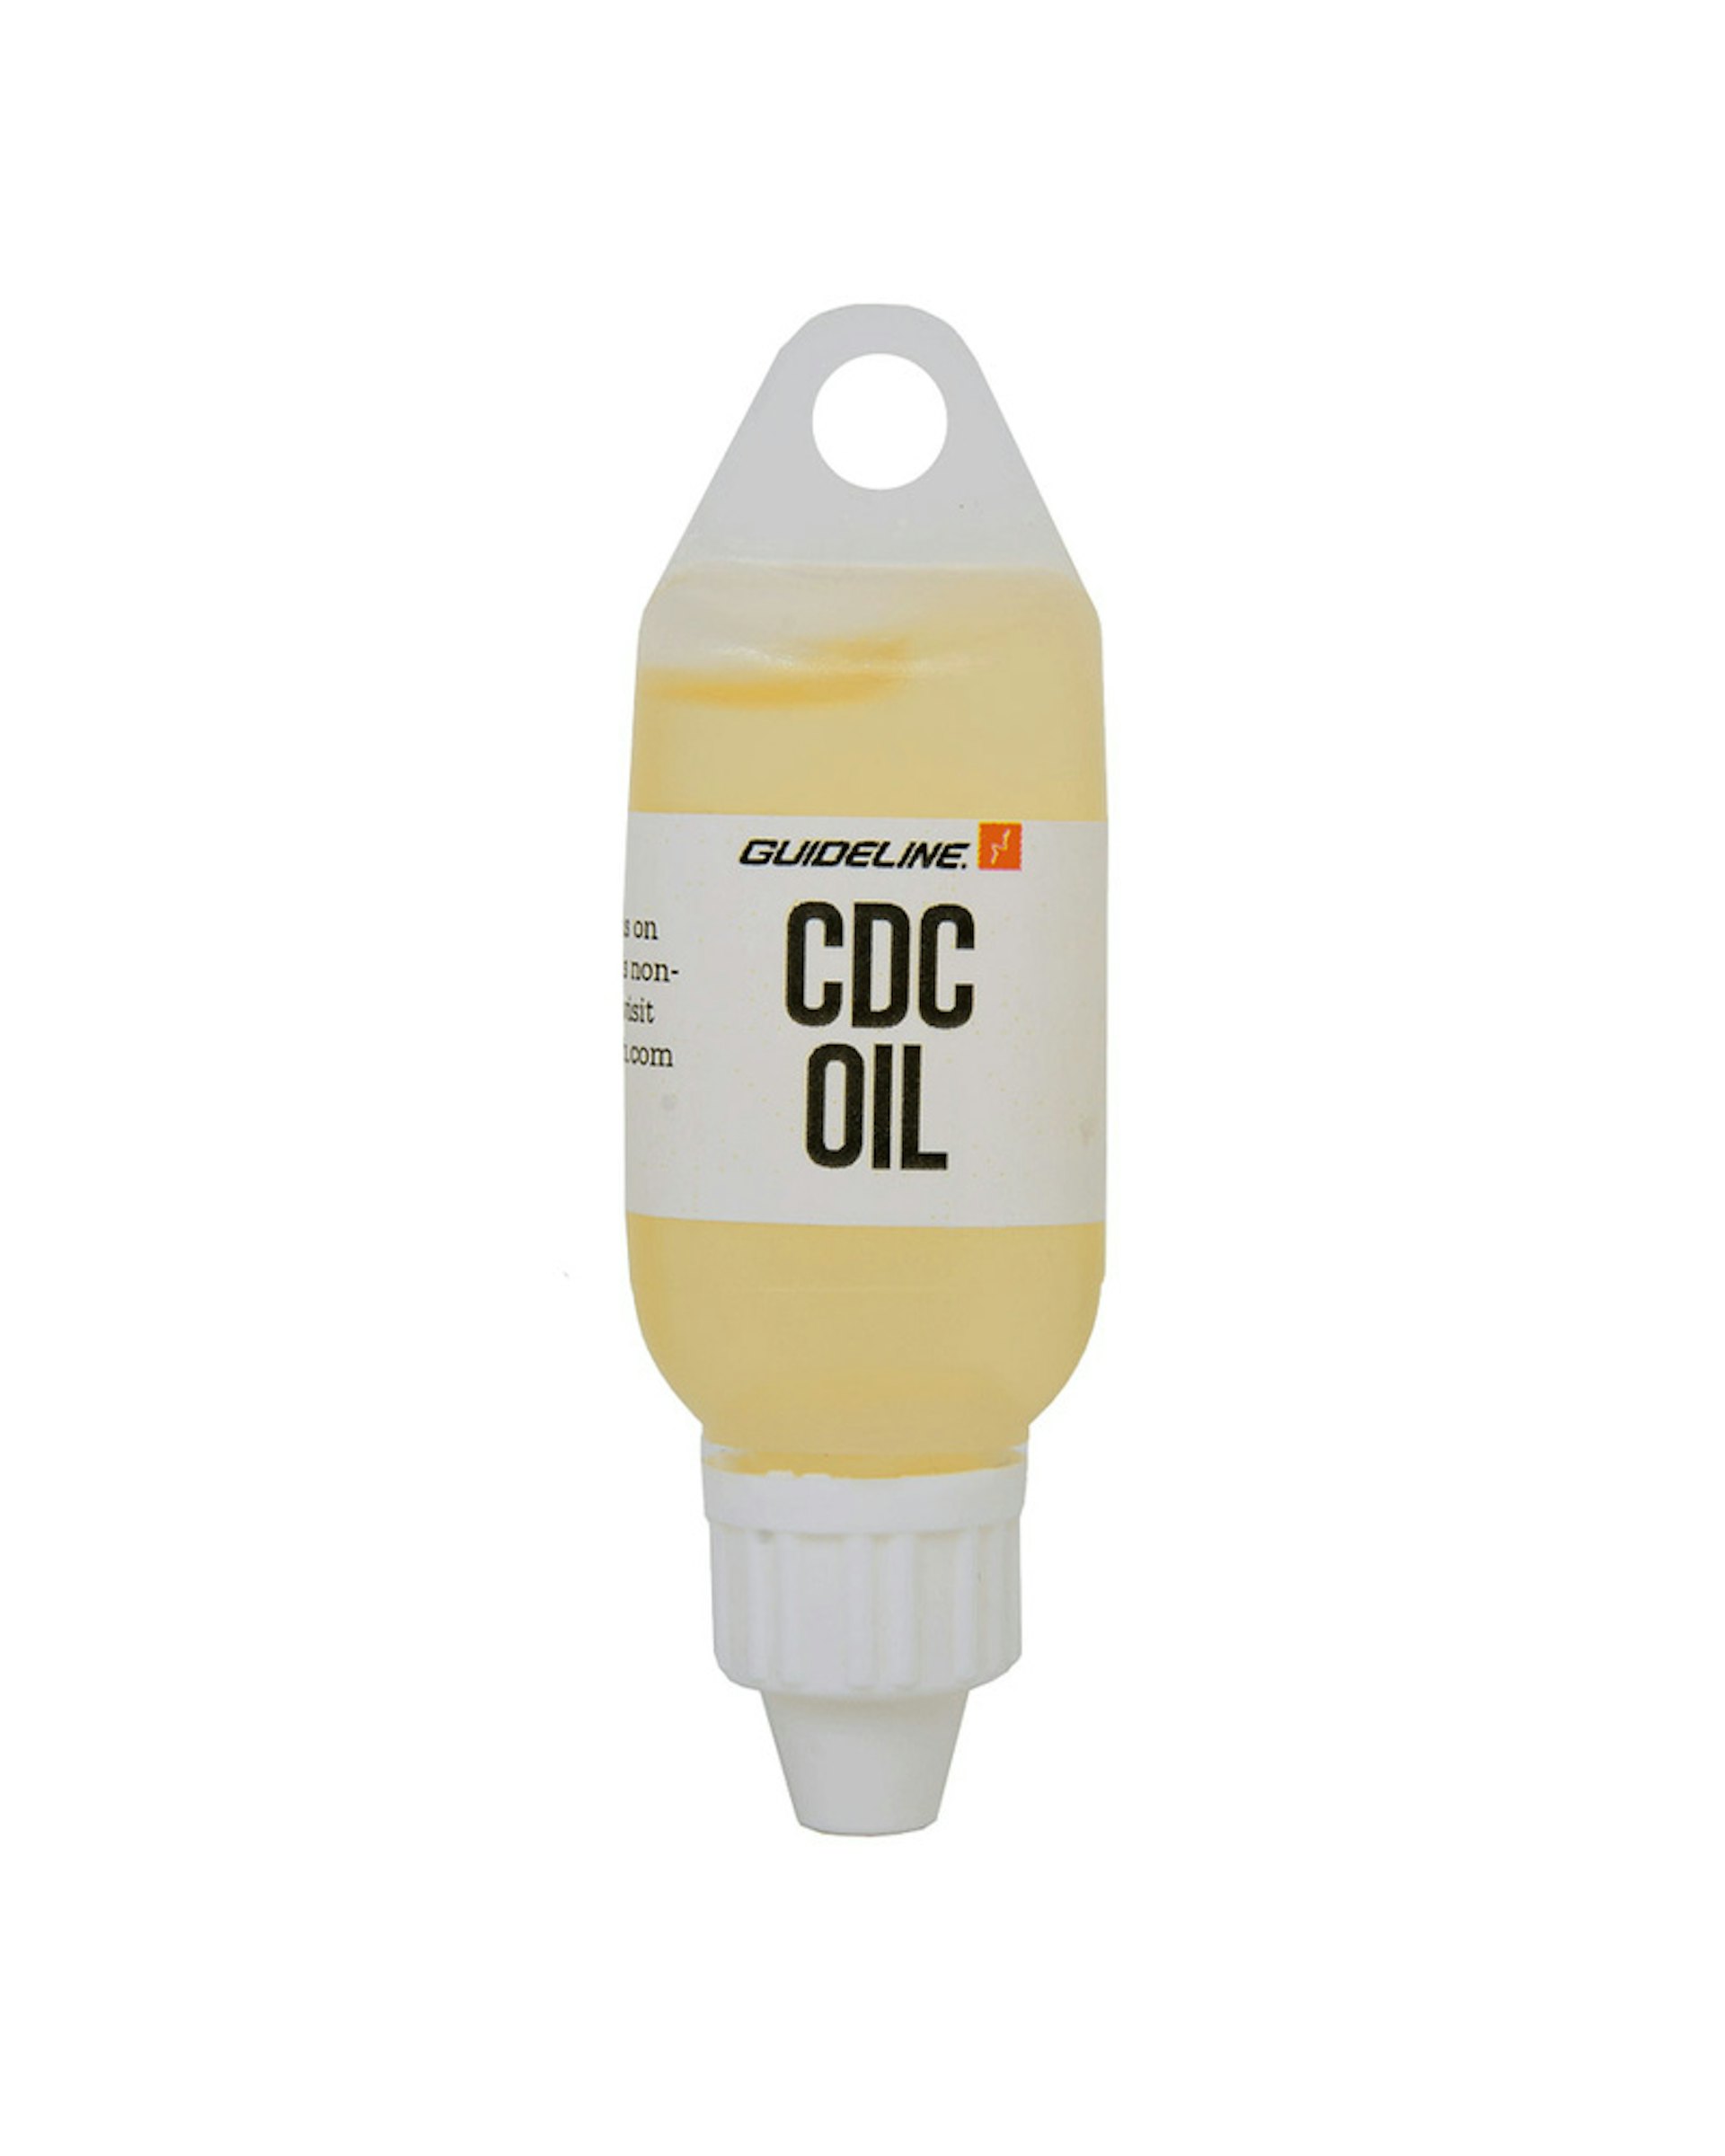 CDC Oil (slide 1 of 2)